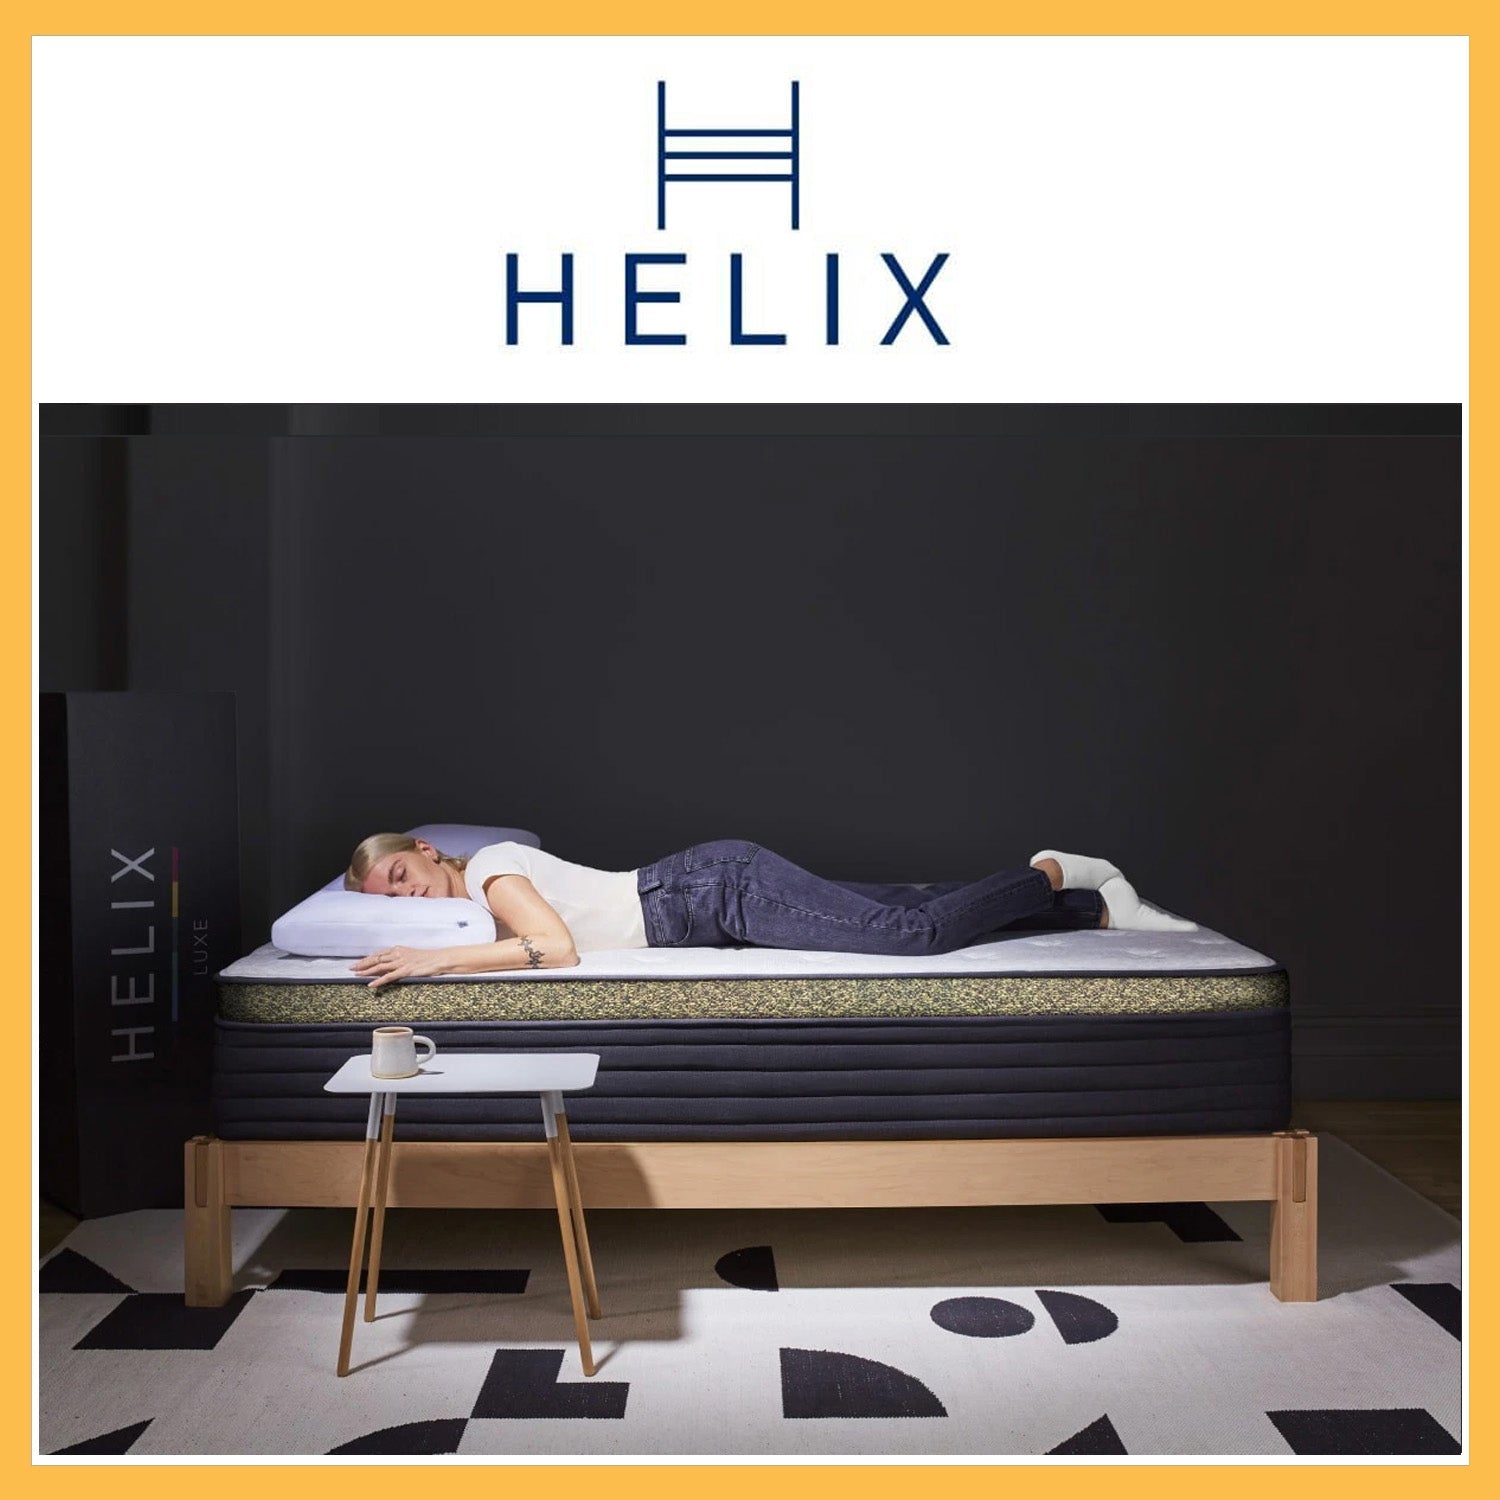 Helix Dawn Luxe Mattress 20% + 2 Free Dream Pillows